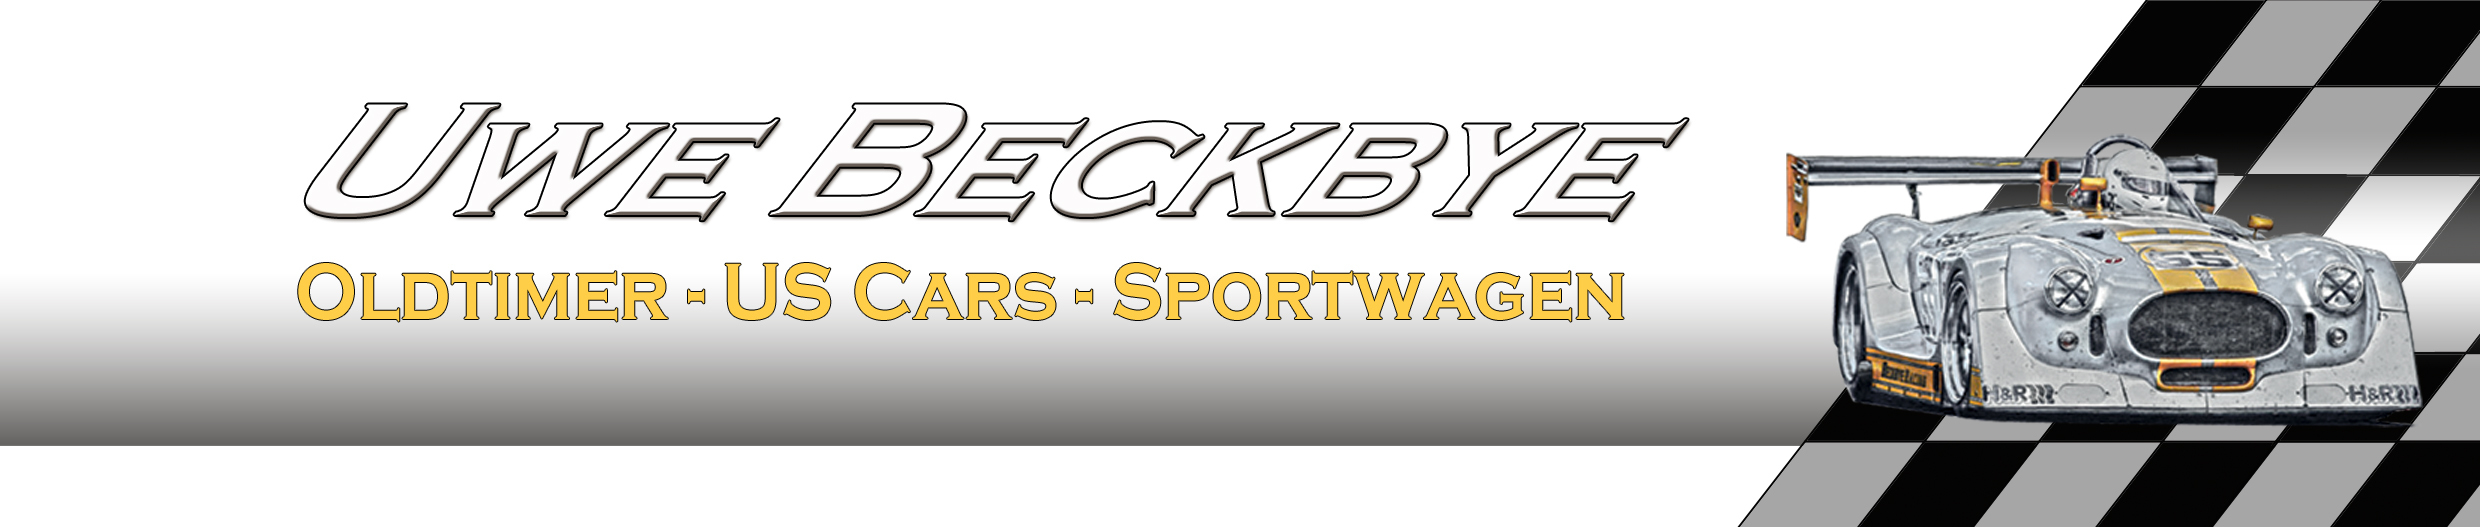 (c) Beckbye-racing.de